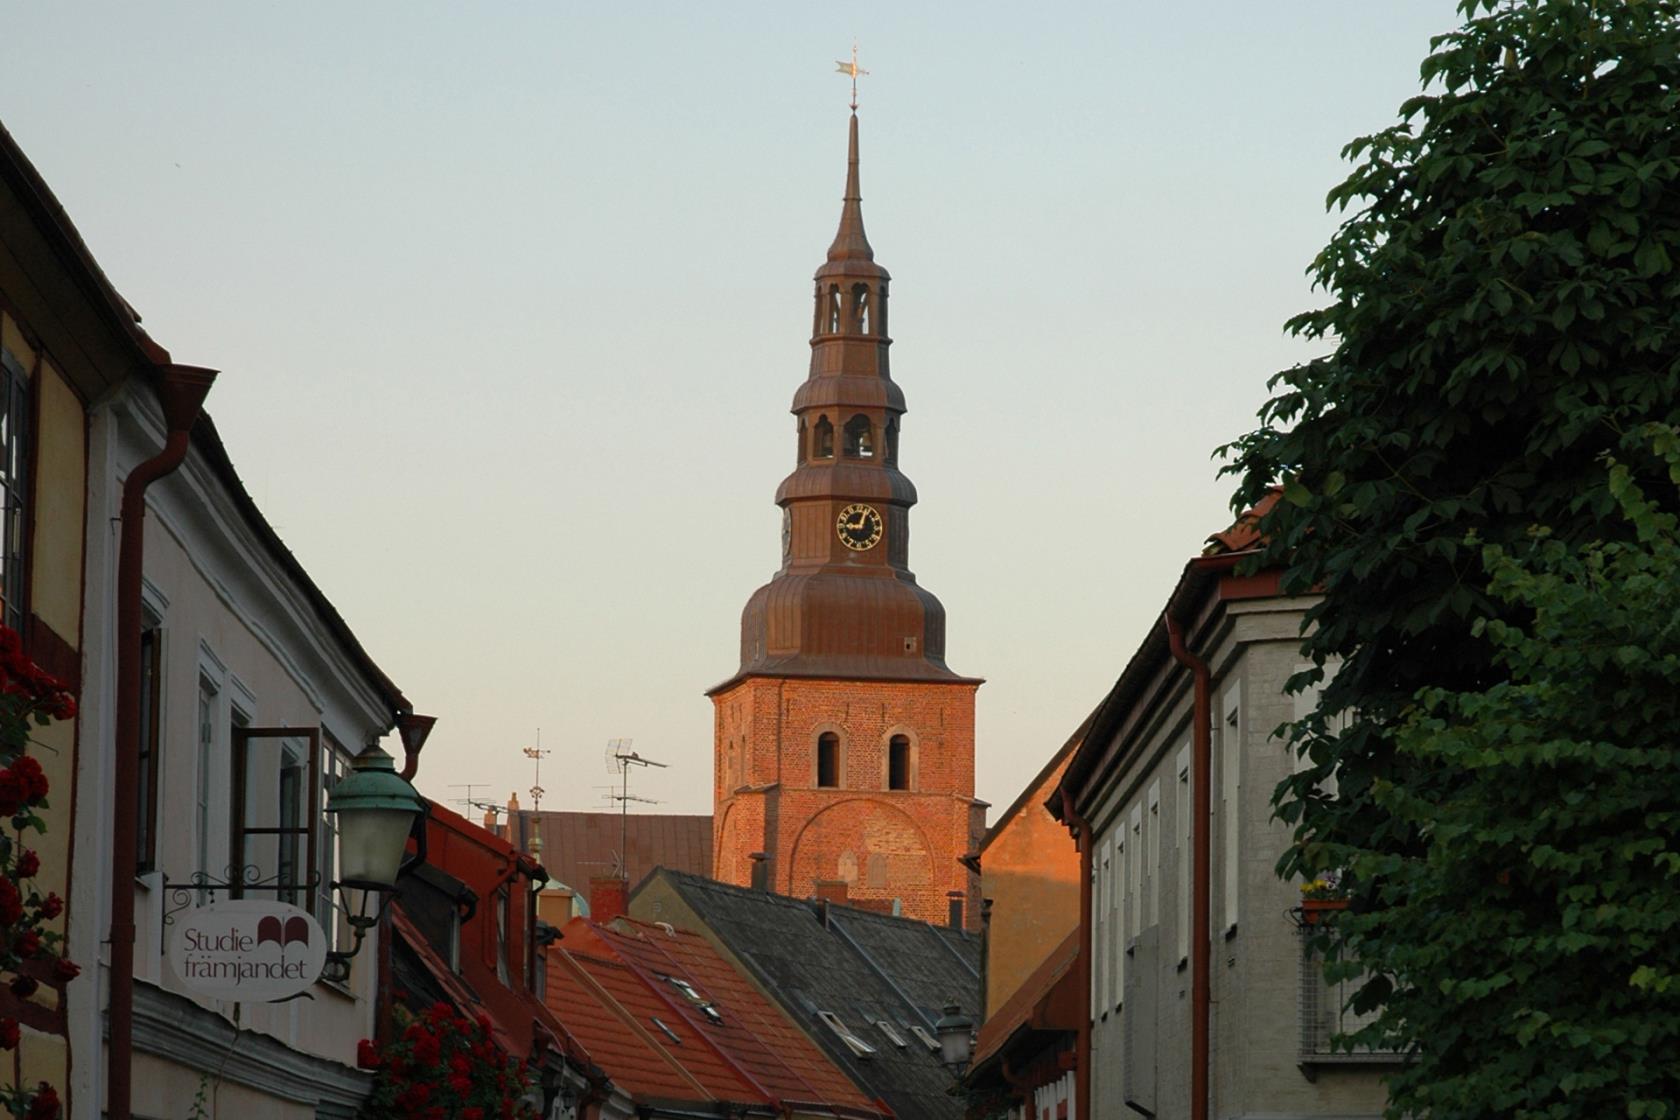 Sankta Maria kyrka ligger mitt i korsvirkesstaden Ystad.